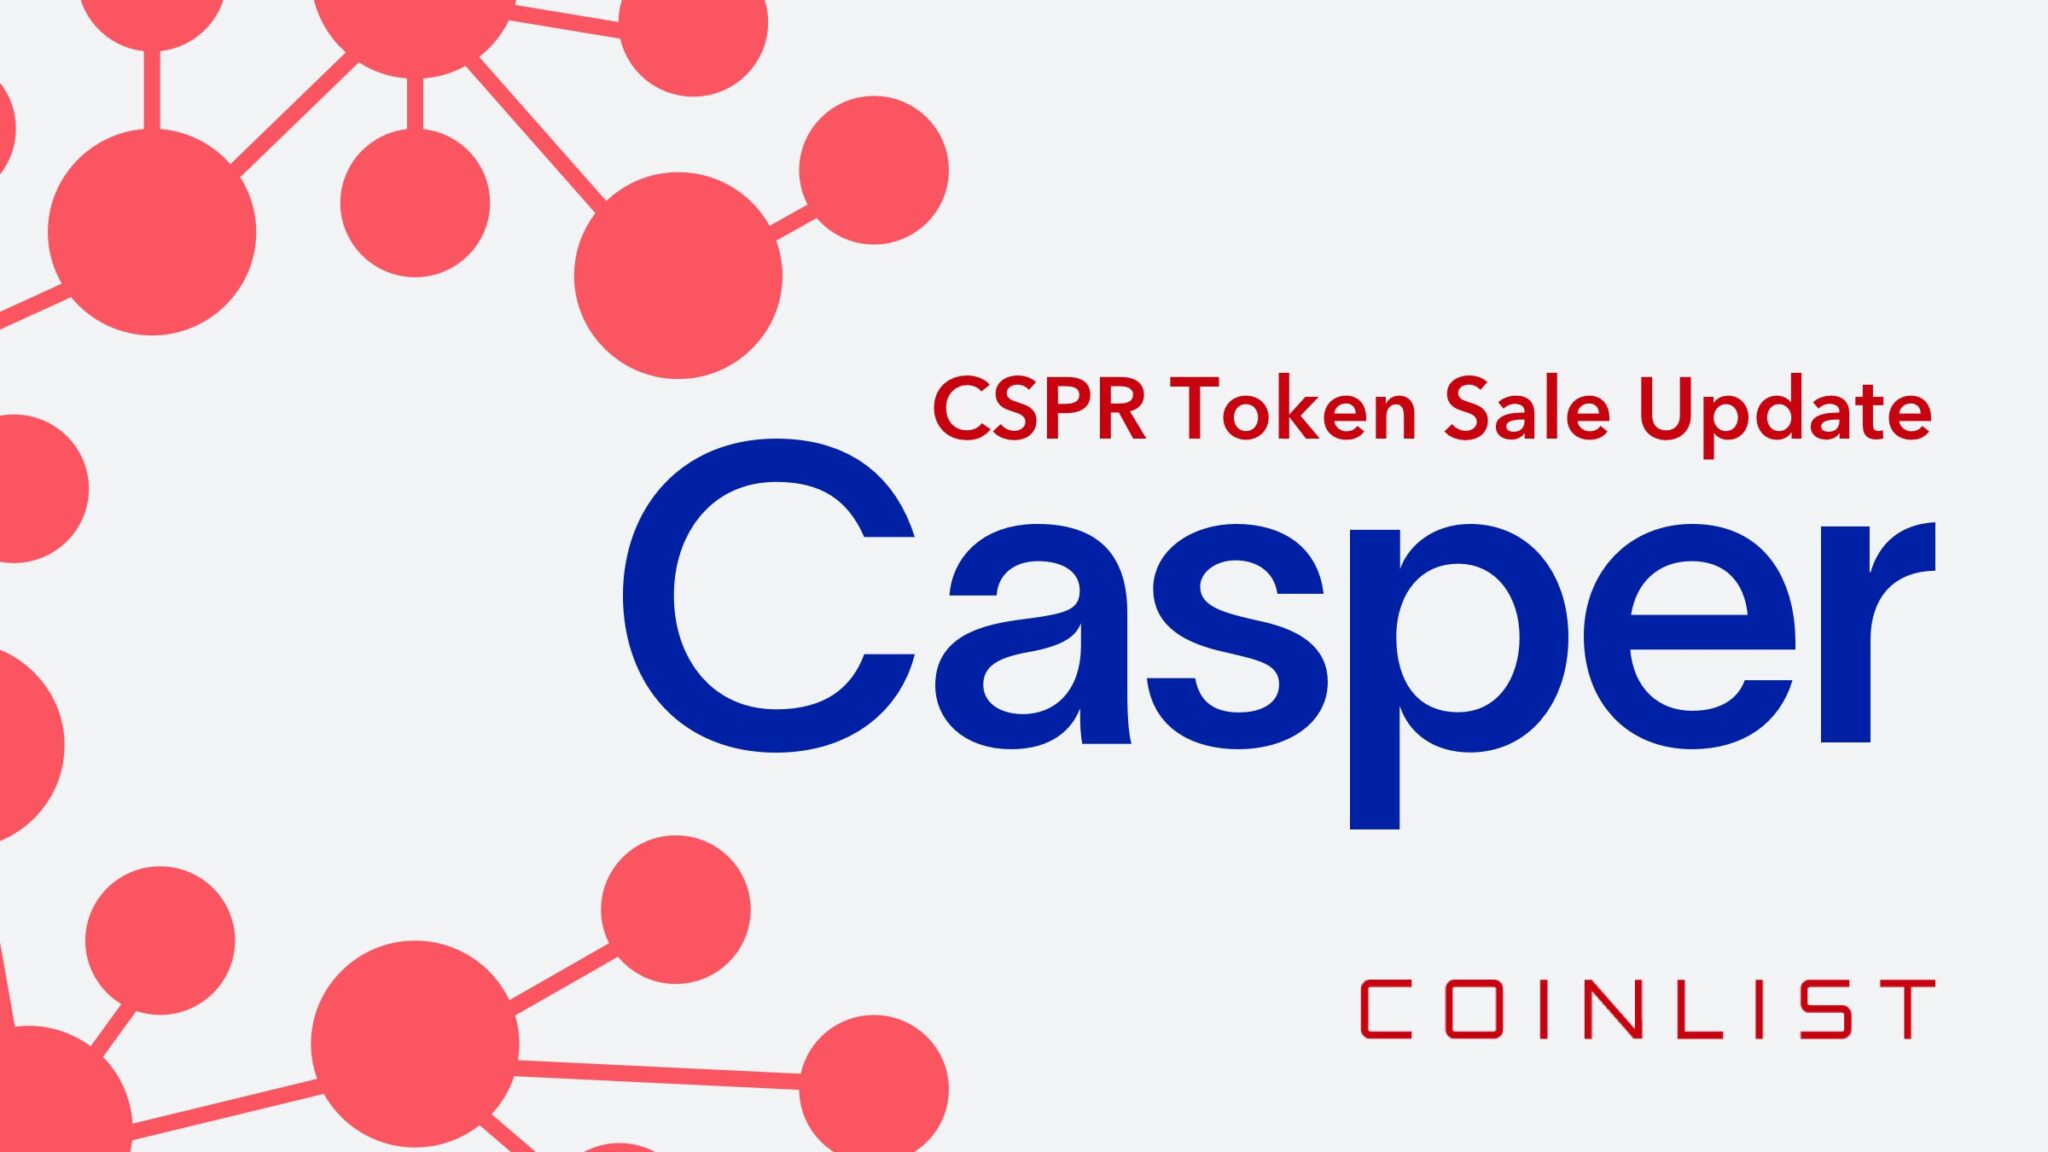 Hn 100.000 nhà đầu tư đổ xô mua token Casper (CSPR) trn ...